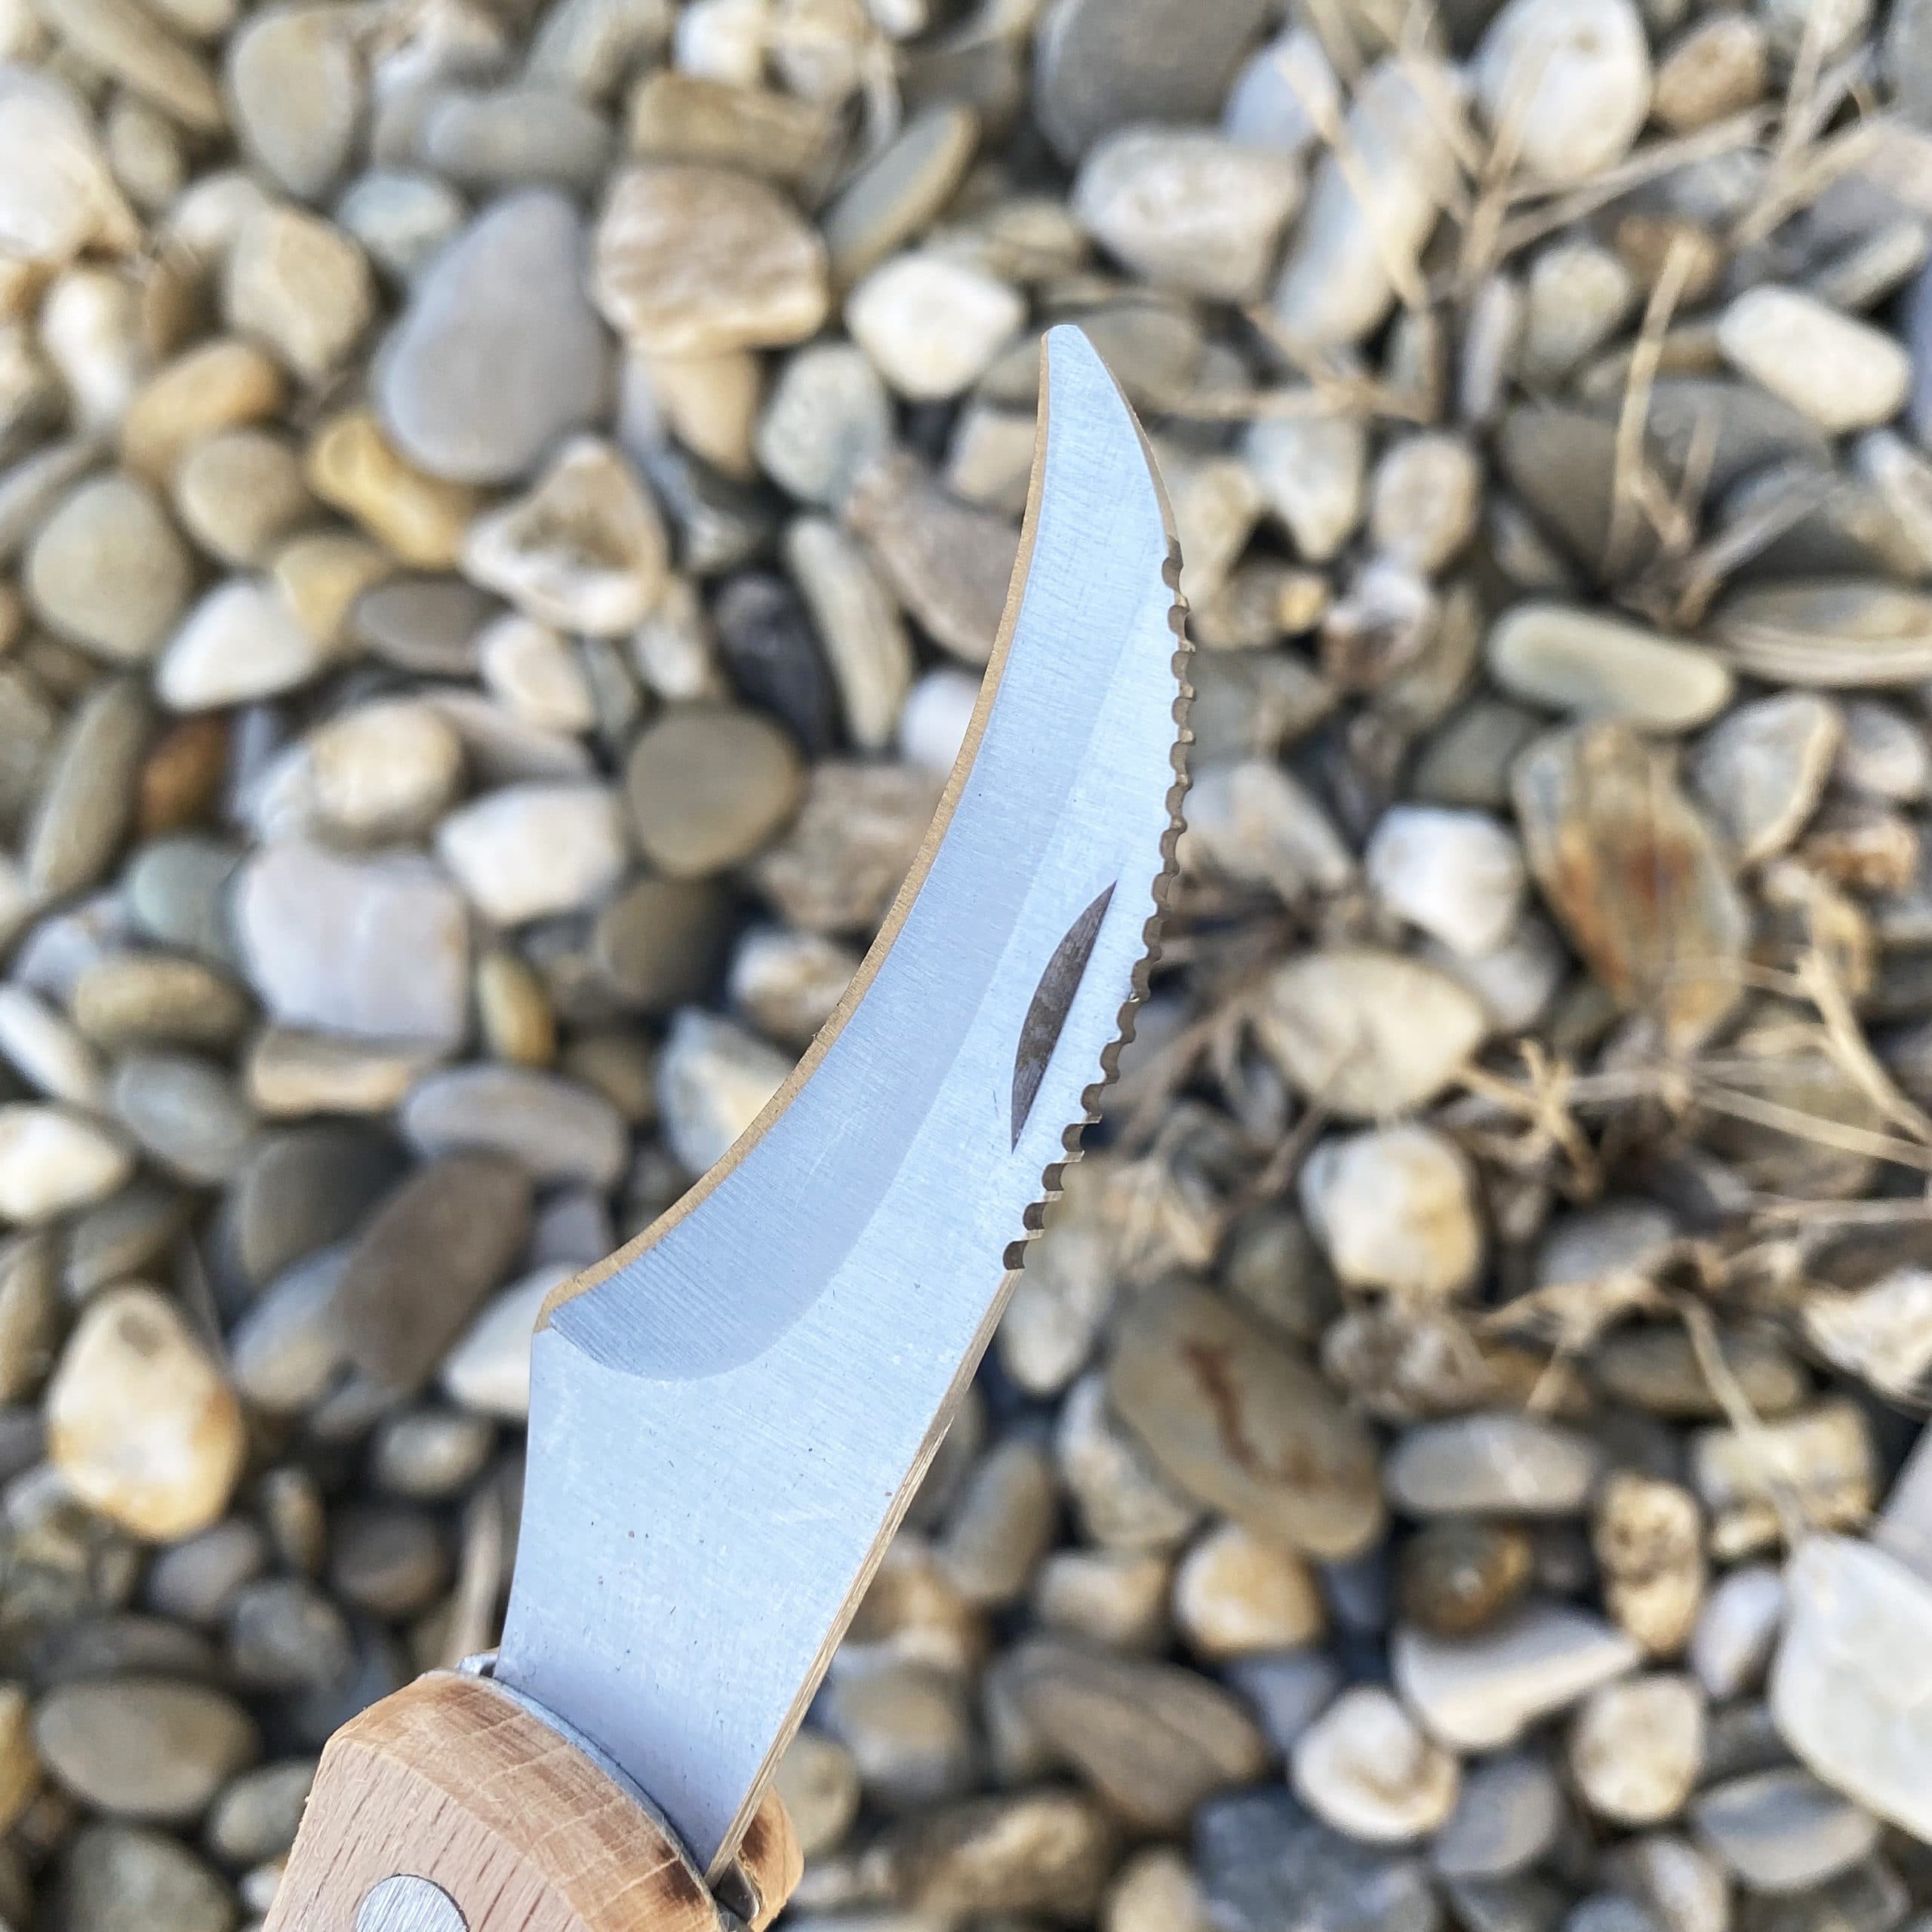 Couteau à champignon avec brosse et cordon